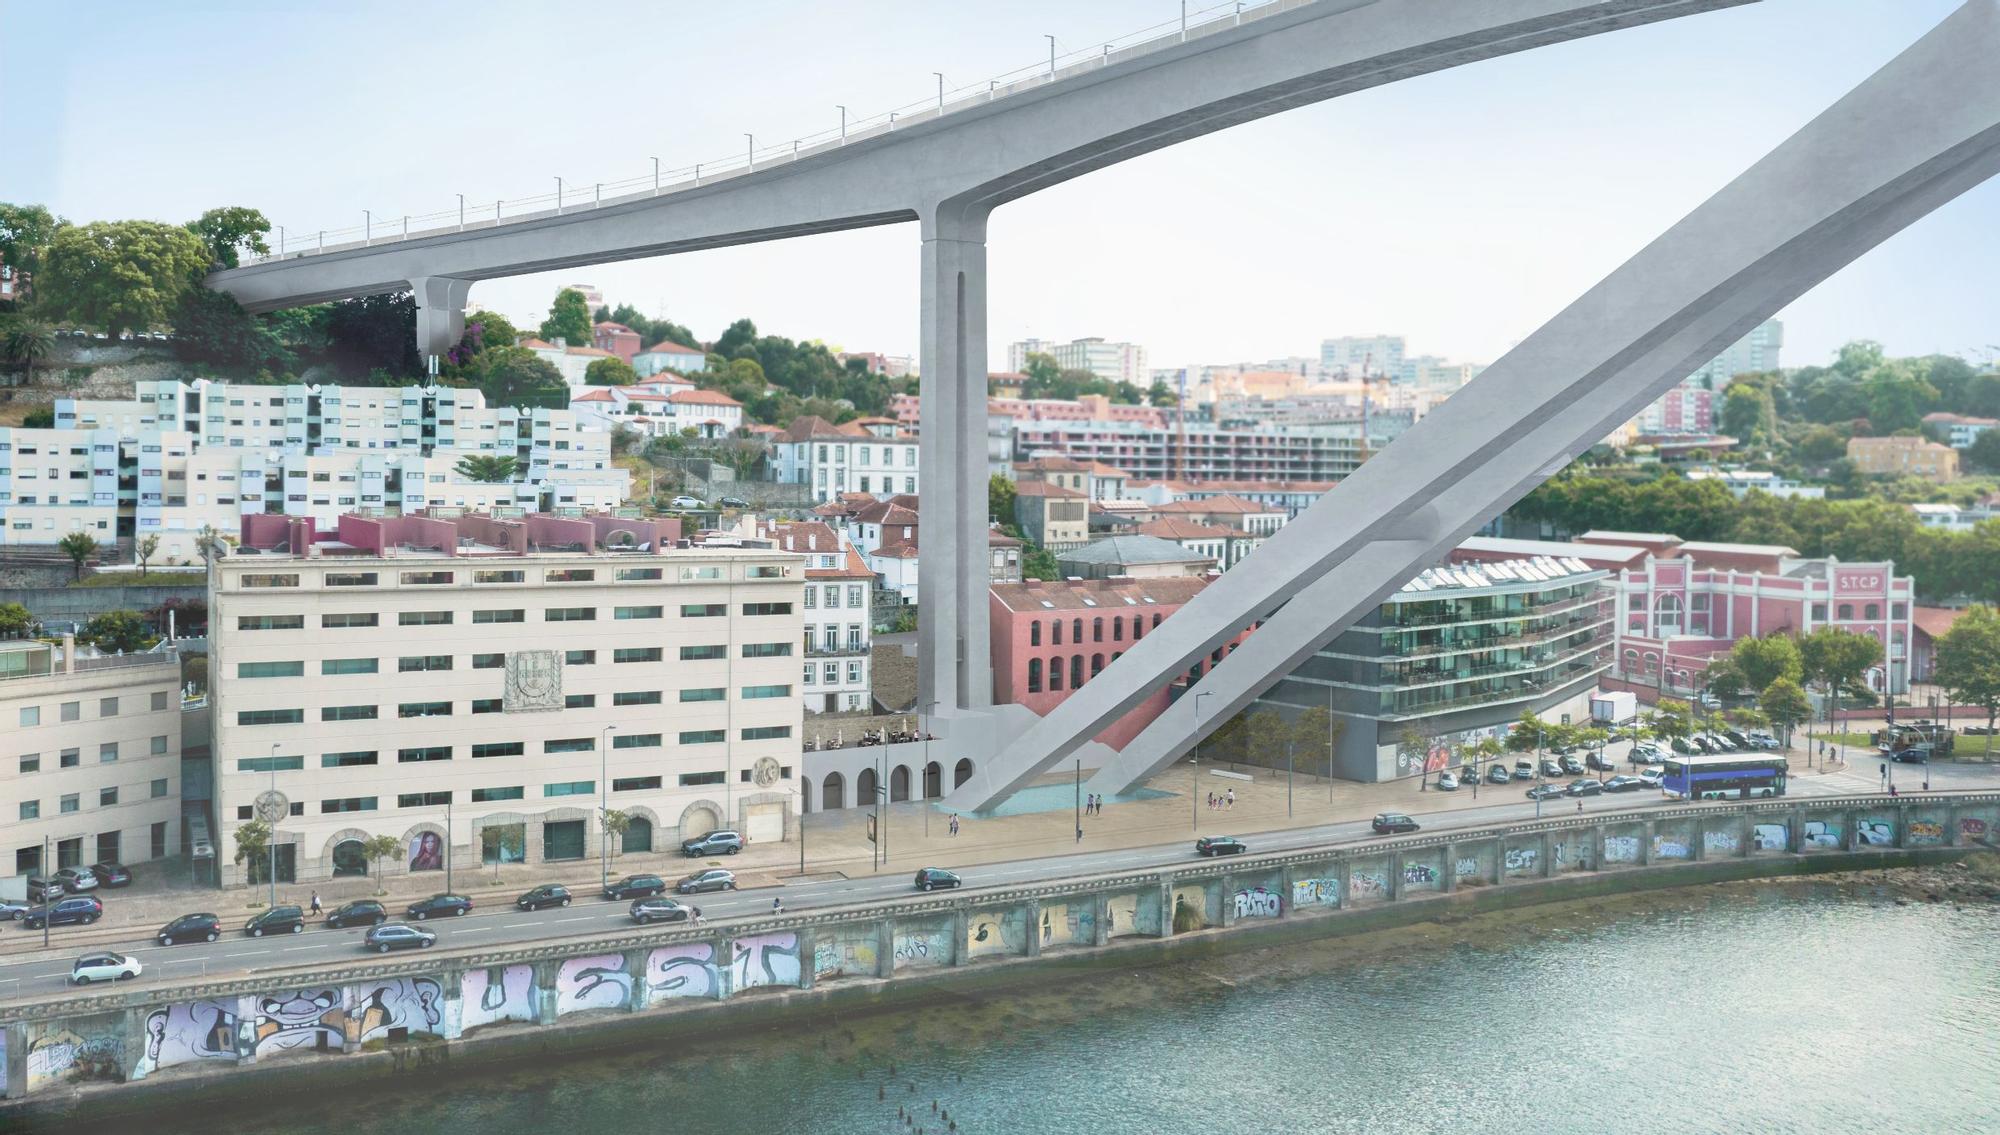 Proyecto premiado del puente sobre el río Duero en Oporto en el que colabora el estudio vigués AM2